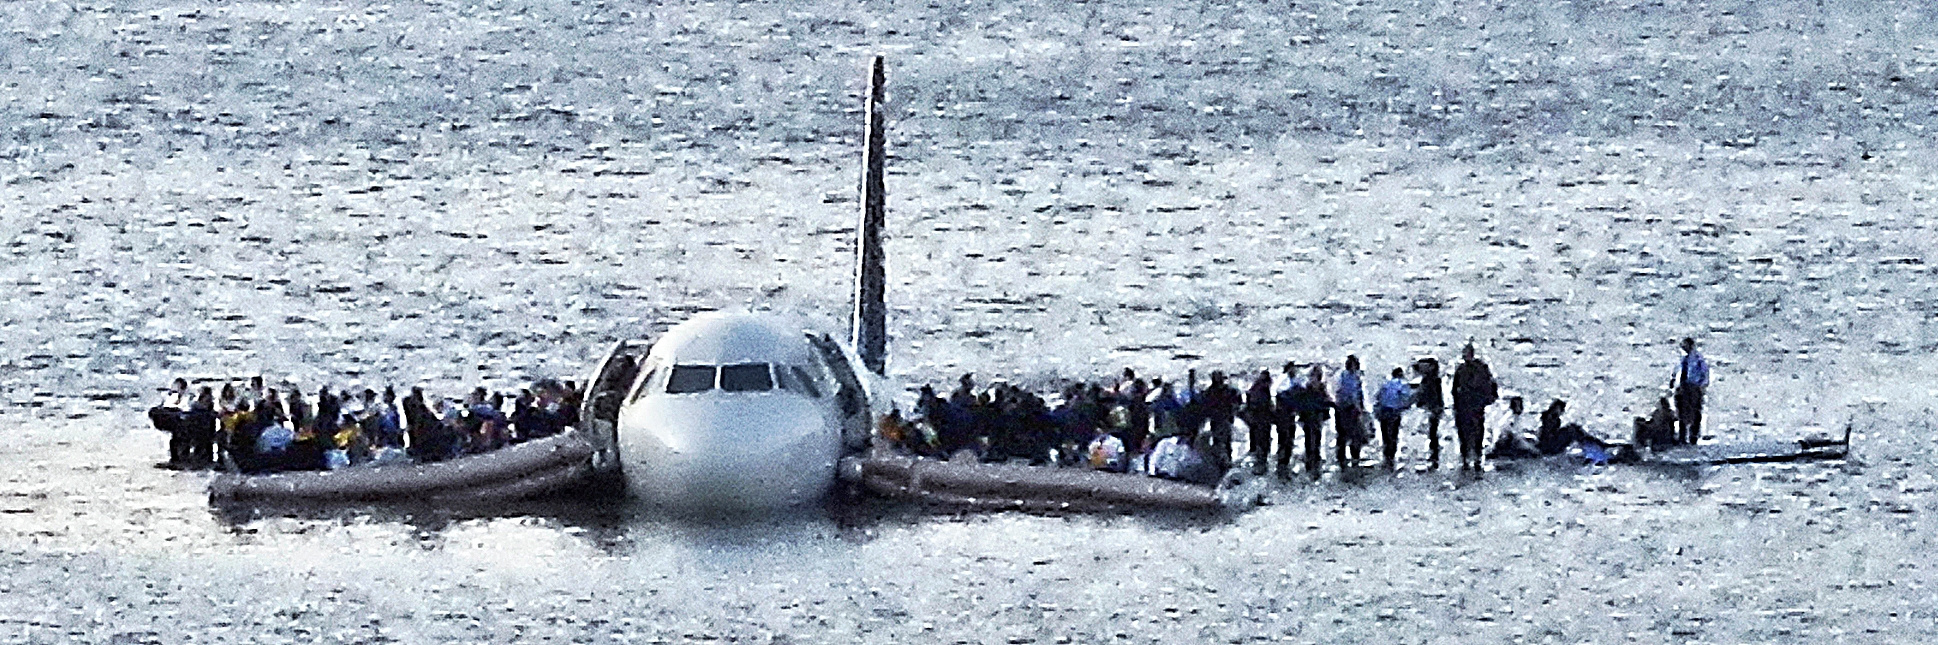 Sully logró acuatizar en el río Hudson y salvar a todo el avión.